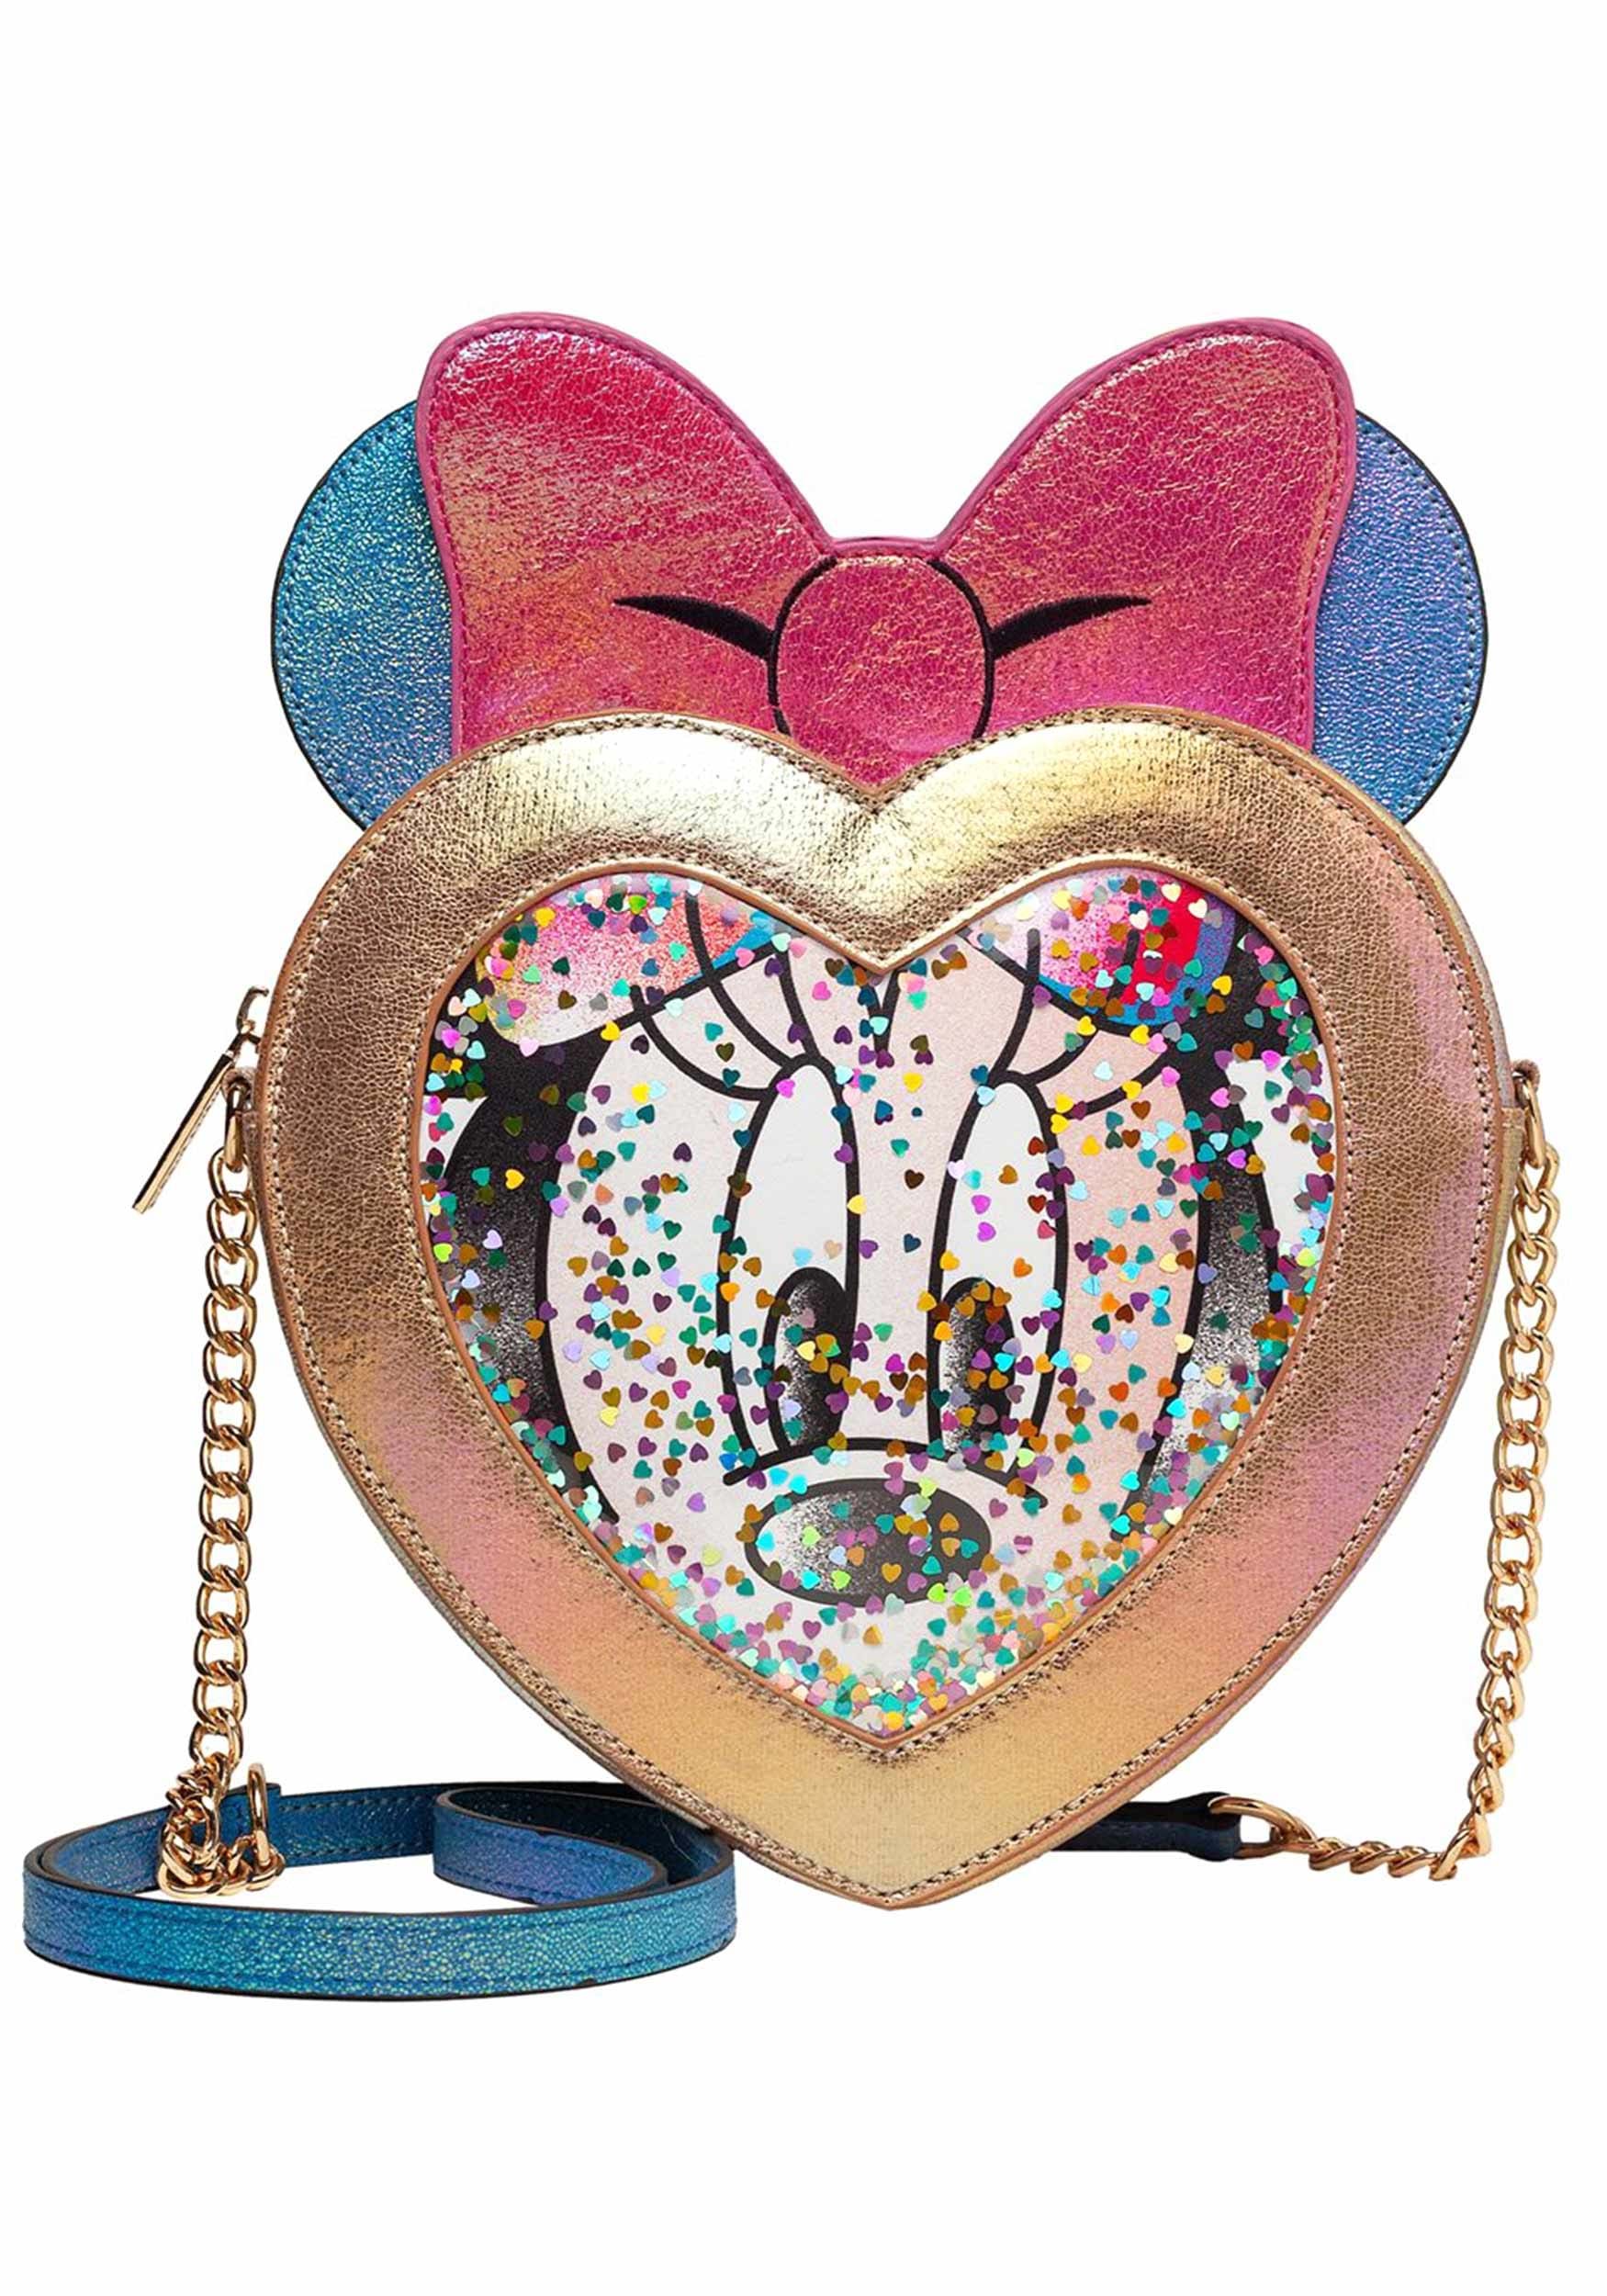 Minnie Mouse Confetti Danielle Nicole Crossbody Bag